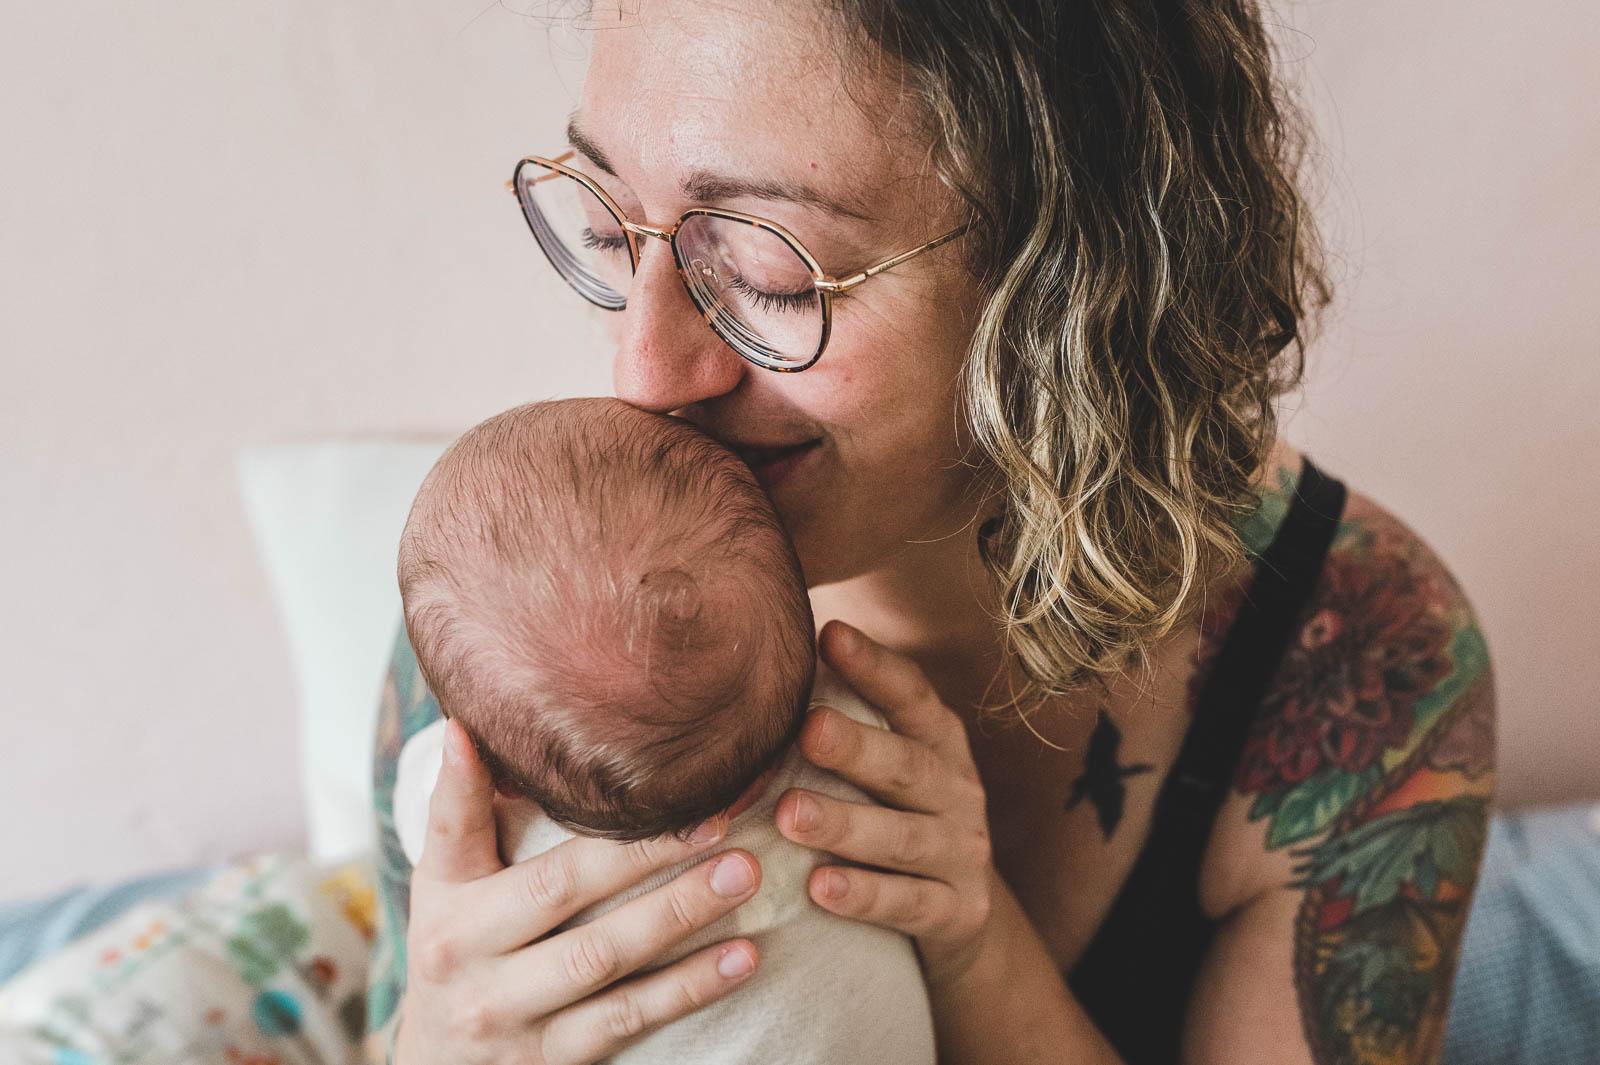 Babyfotografie einer Mutter mit ihrem Neugeborenen.